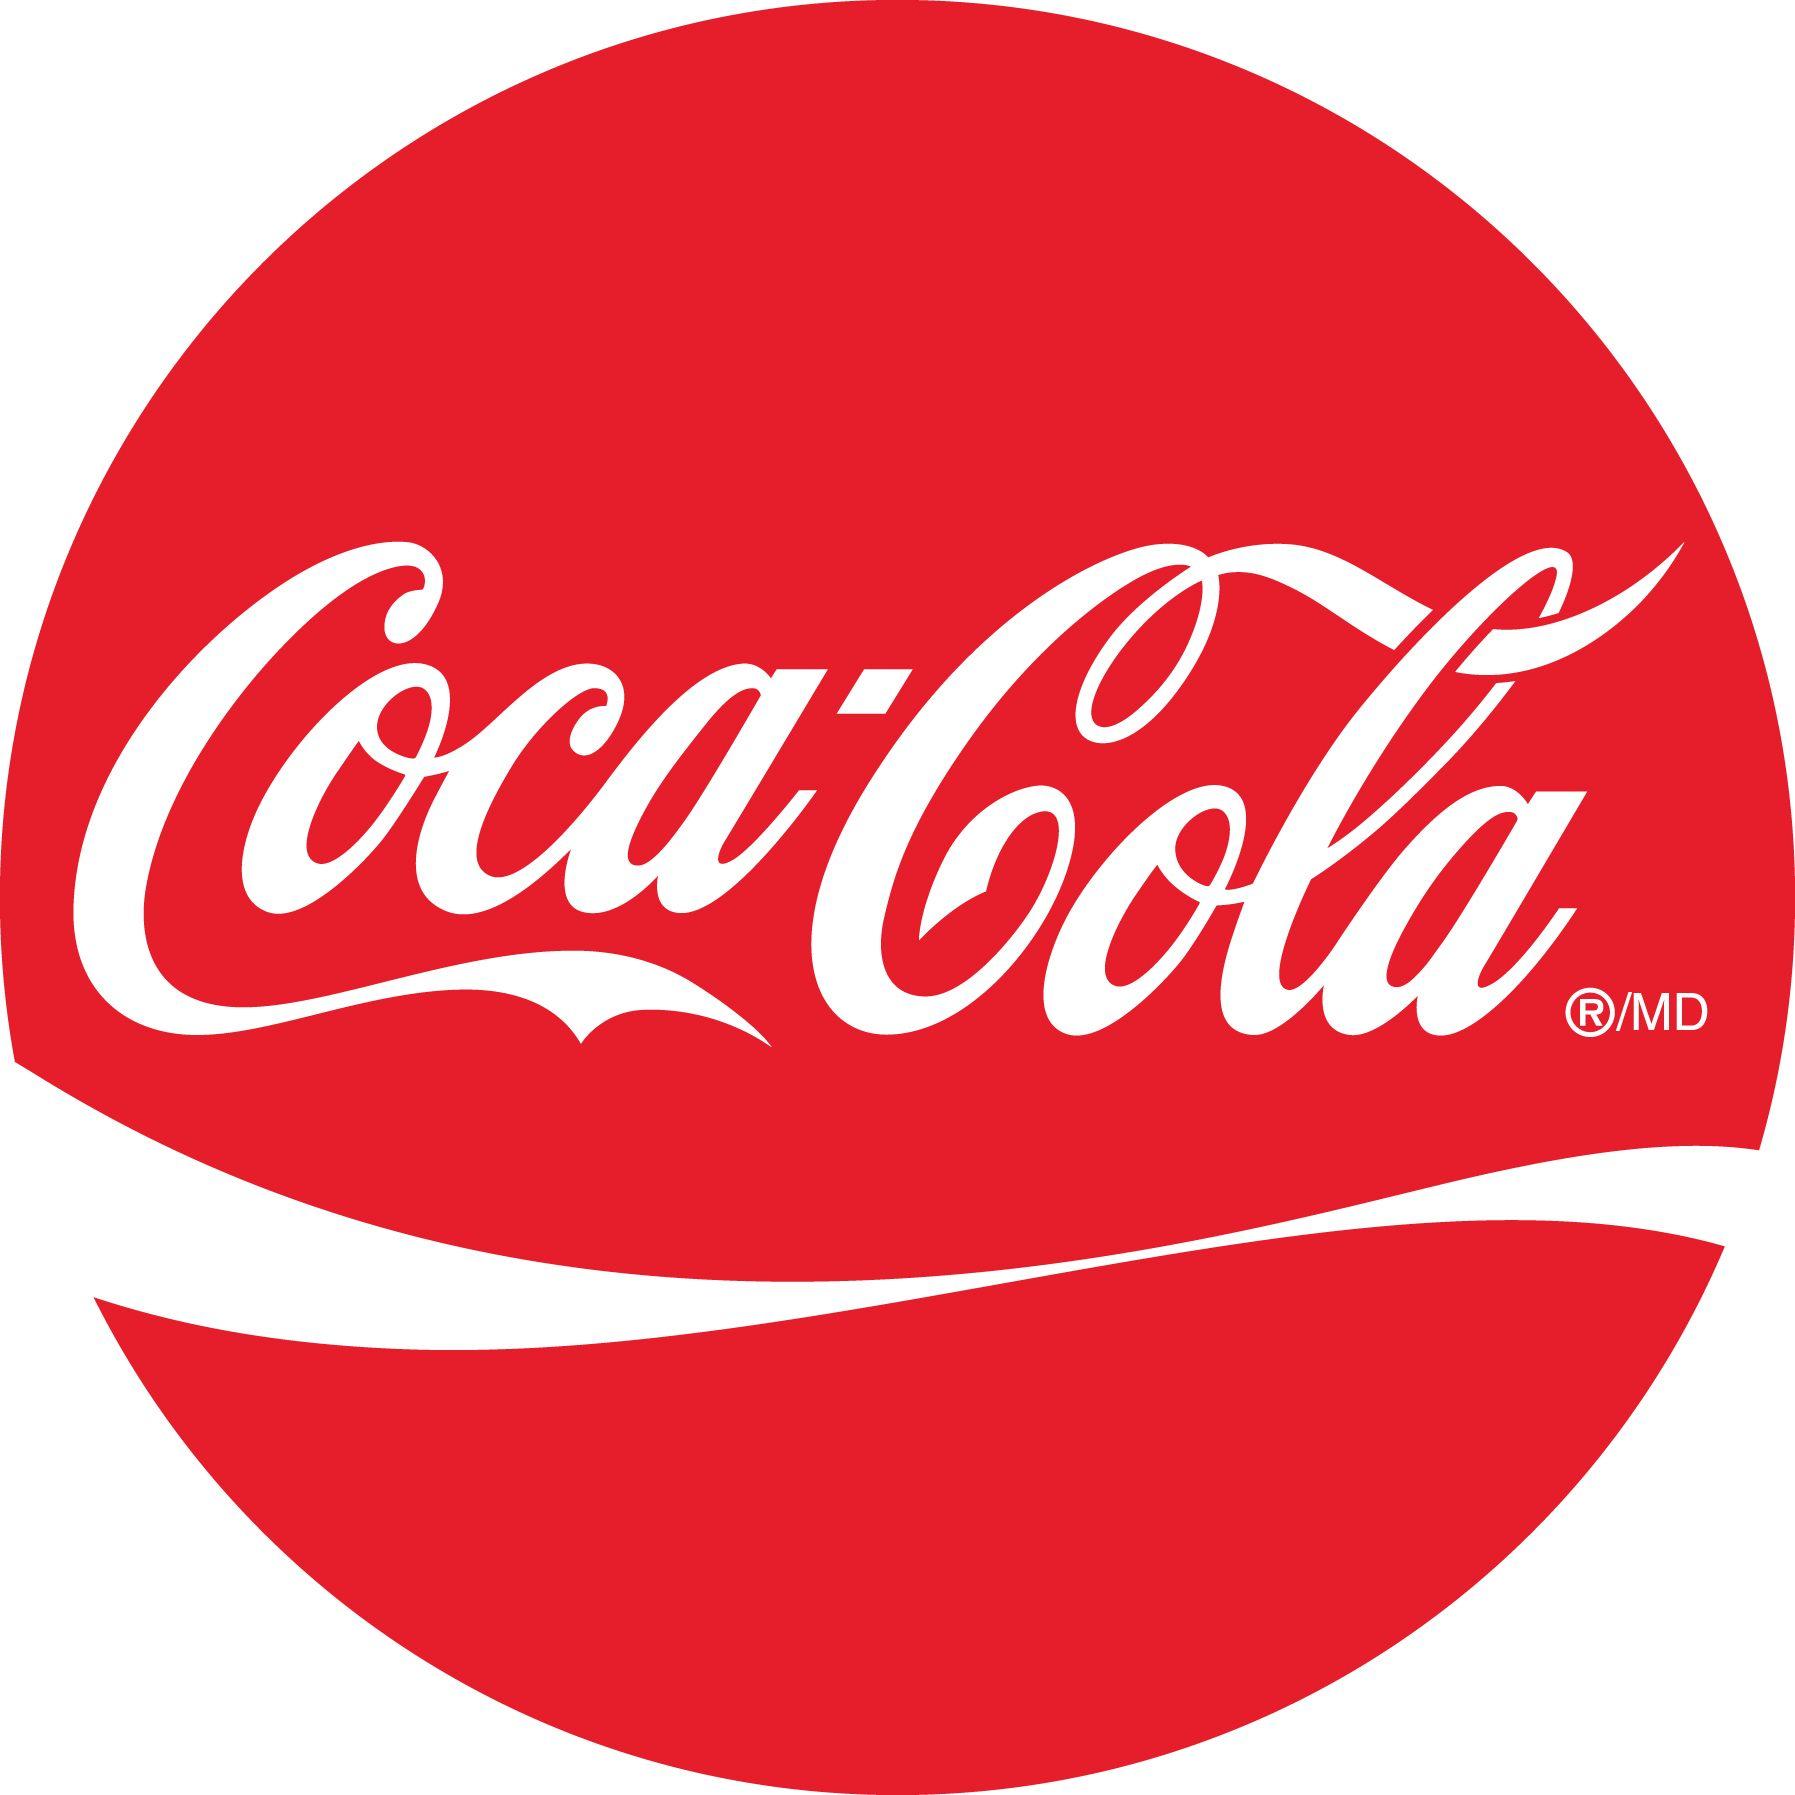 Cocola Logo - Coca Cola. Logos. Coca Cola Bottles, Coca Cola, Cola